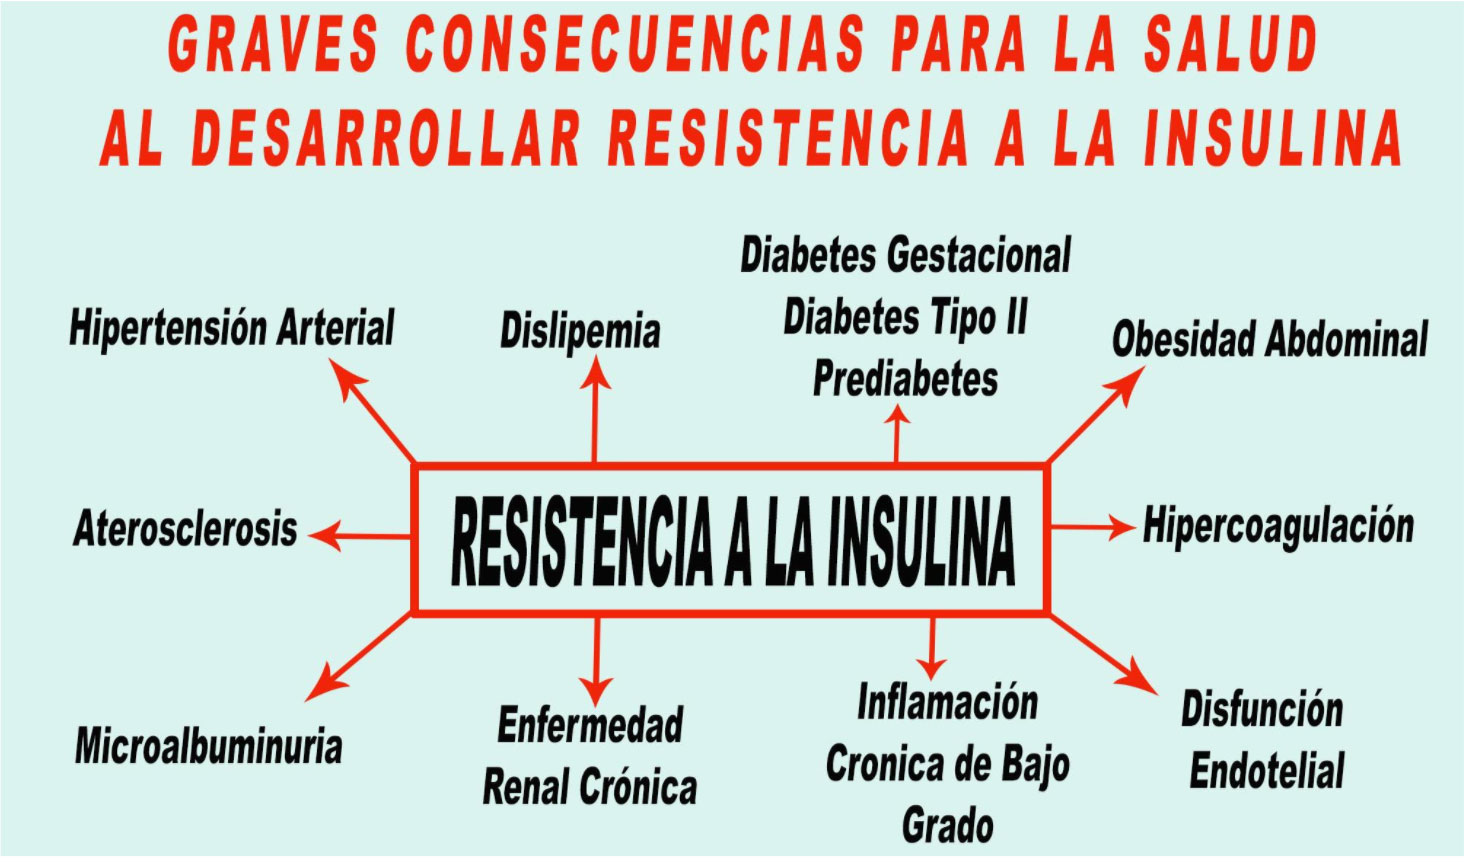 Graves consecuencias para la salud al desarrollar resistencia a la insulina